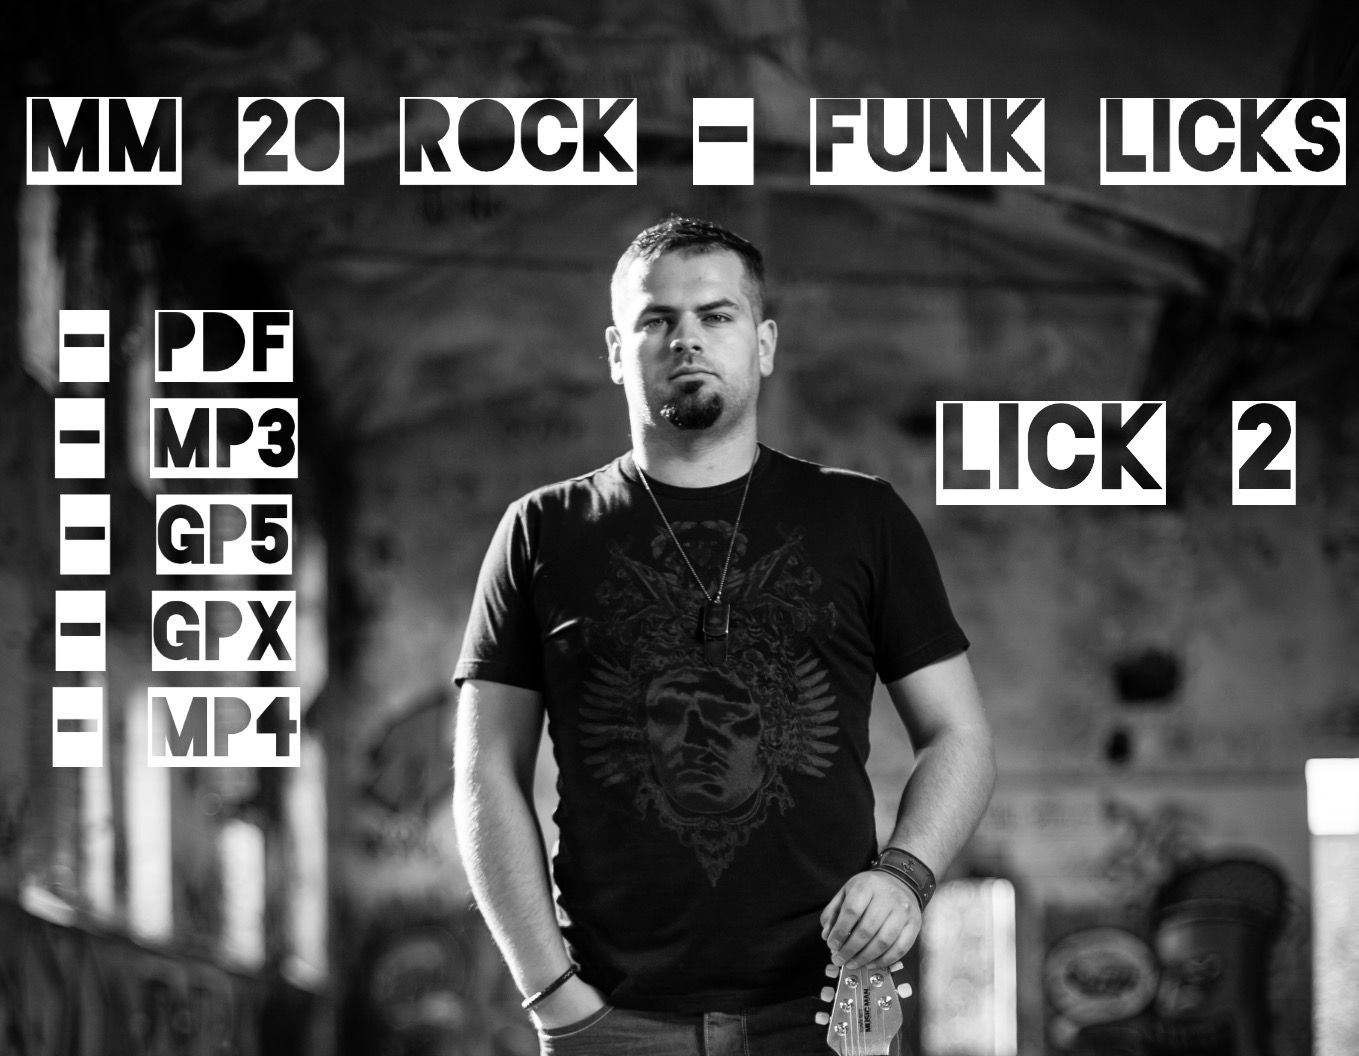 MM 20 Rock-Funk Licks, LICK 2